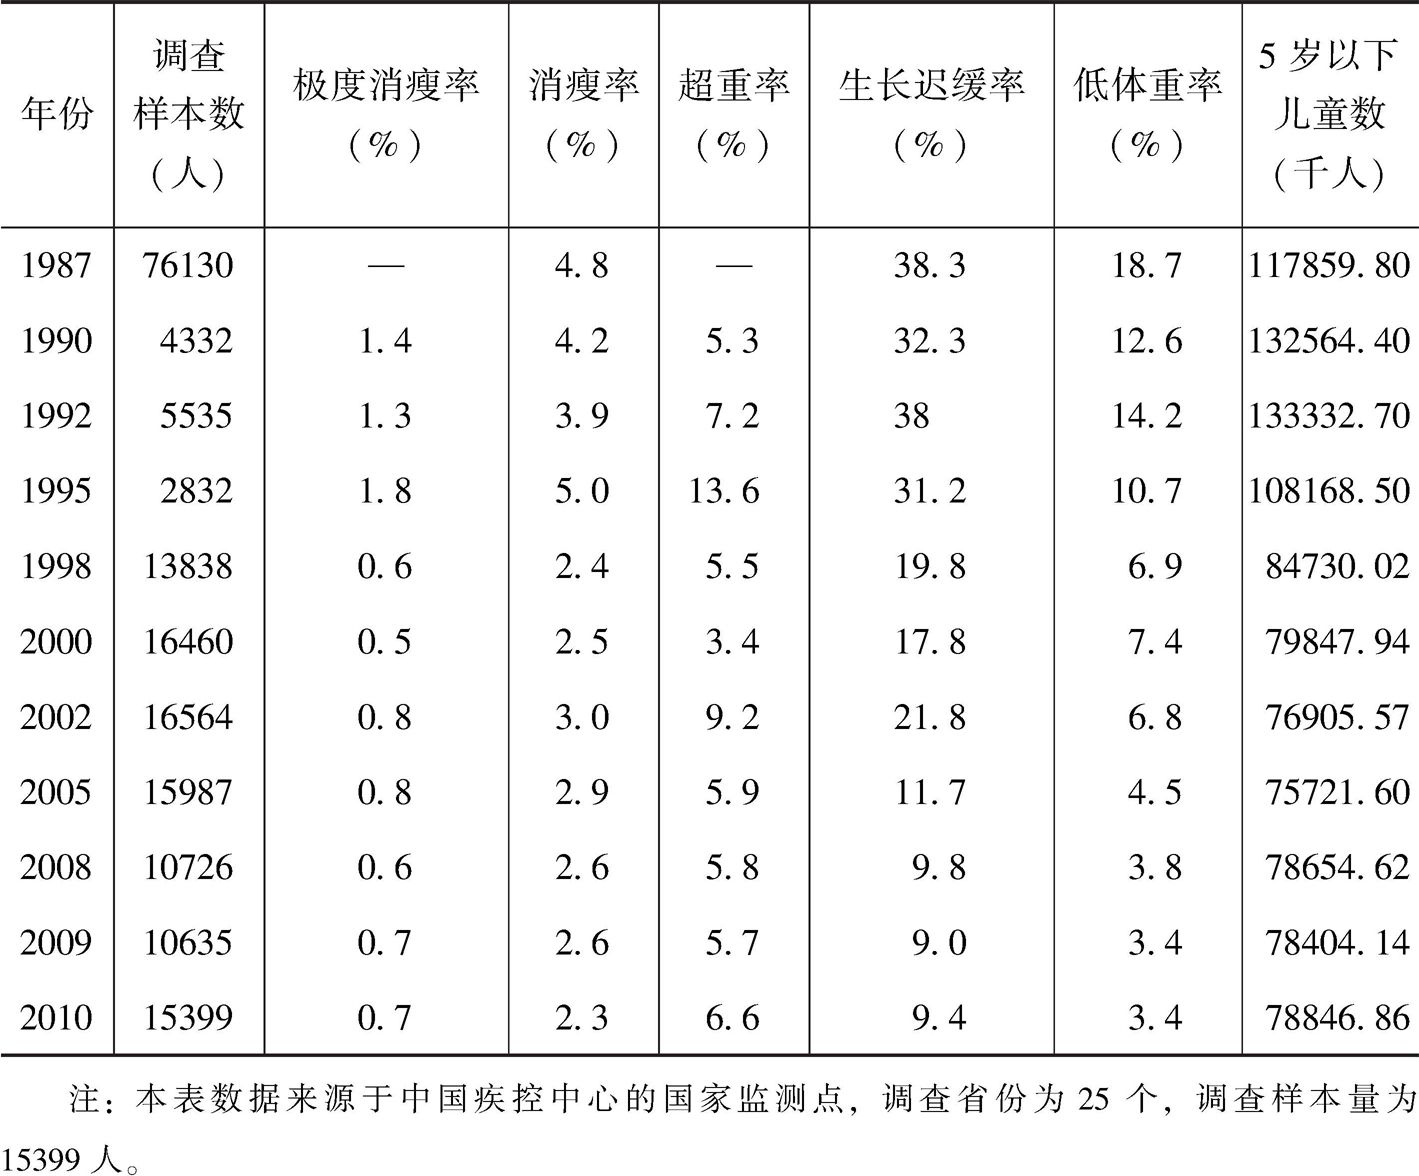 表3-1 中国5岁以下儿童营养不良状况改善情况（1987～2010年）